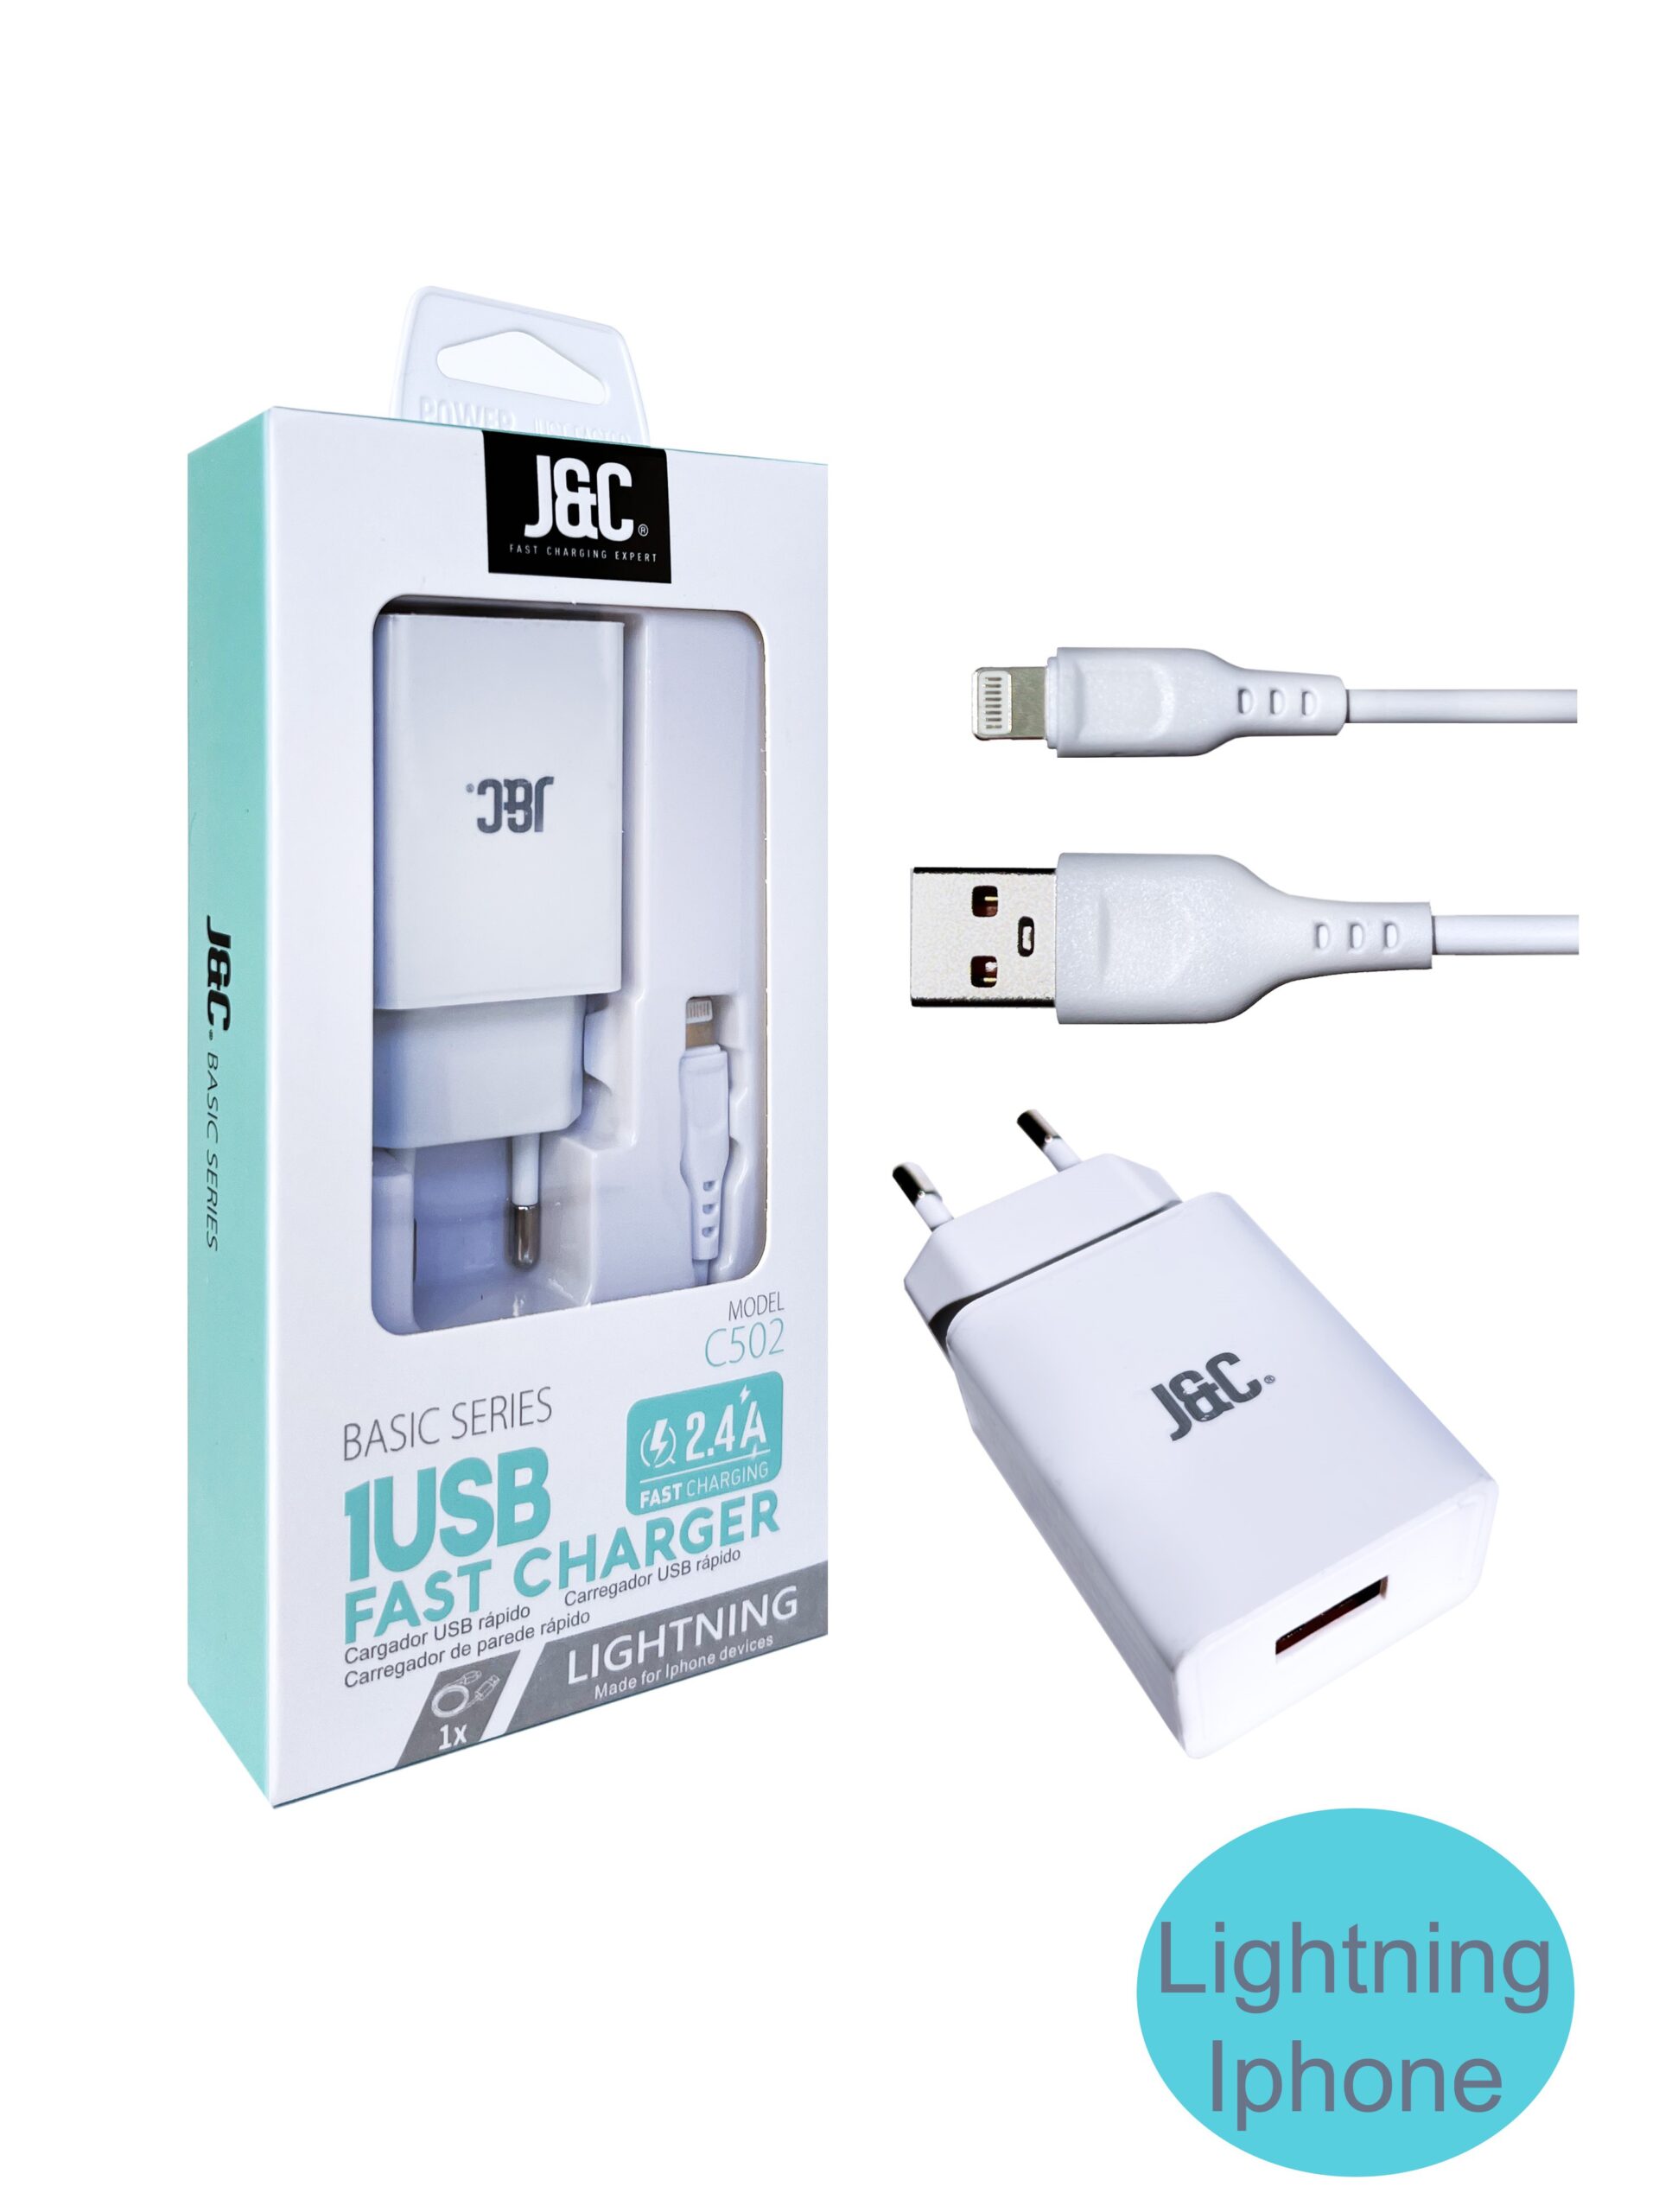 Cargador Iphone Carga Rápida 1 USB 2,4A Cable Lightning Iphone J&C